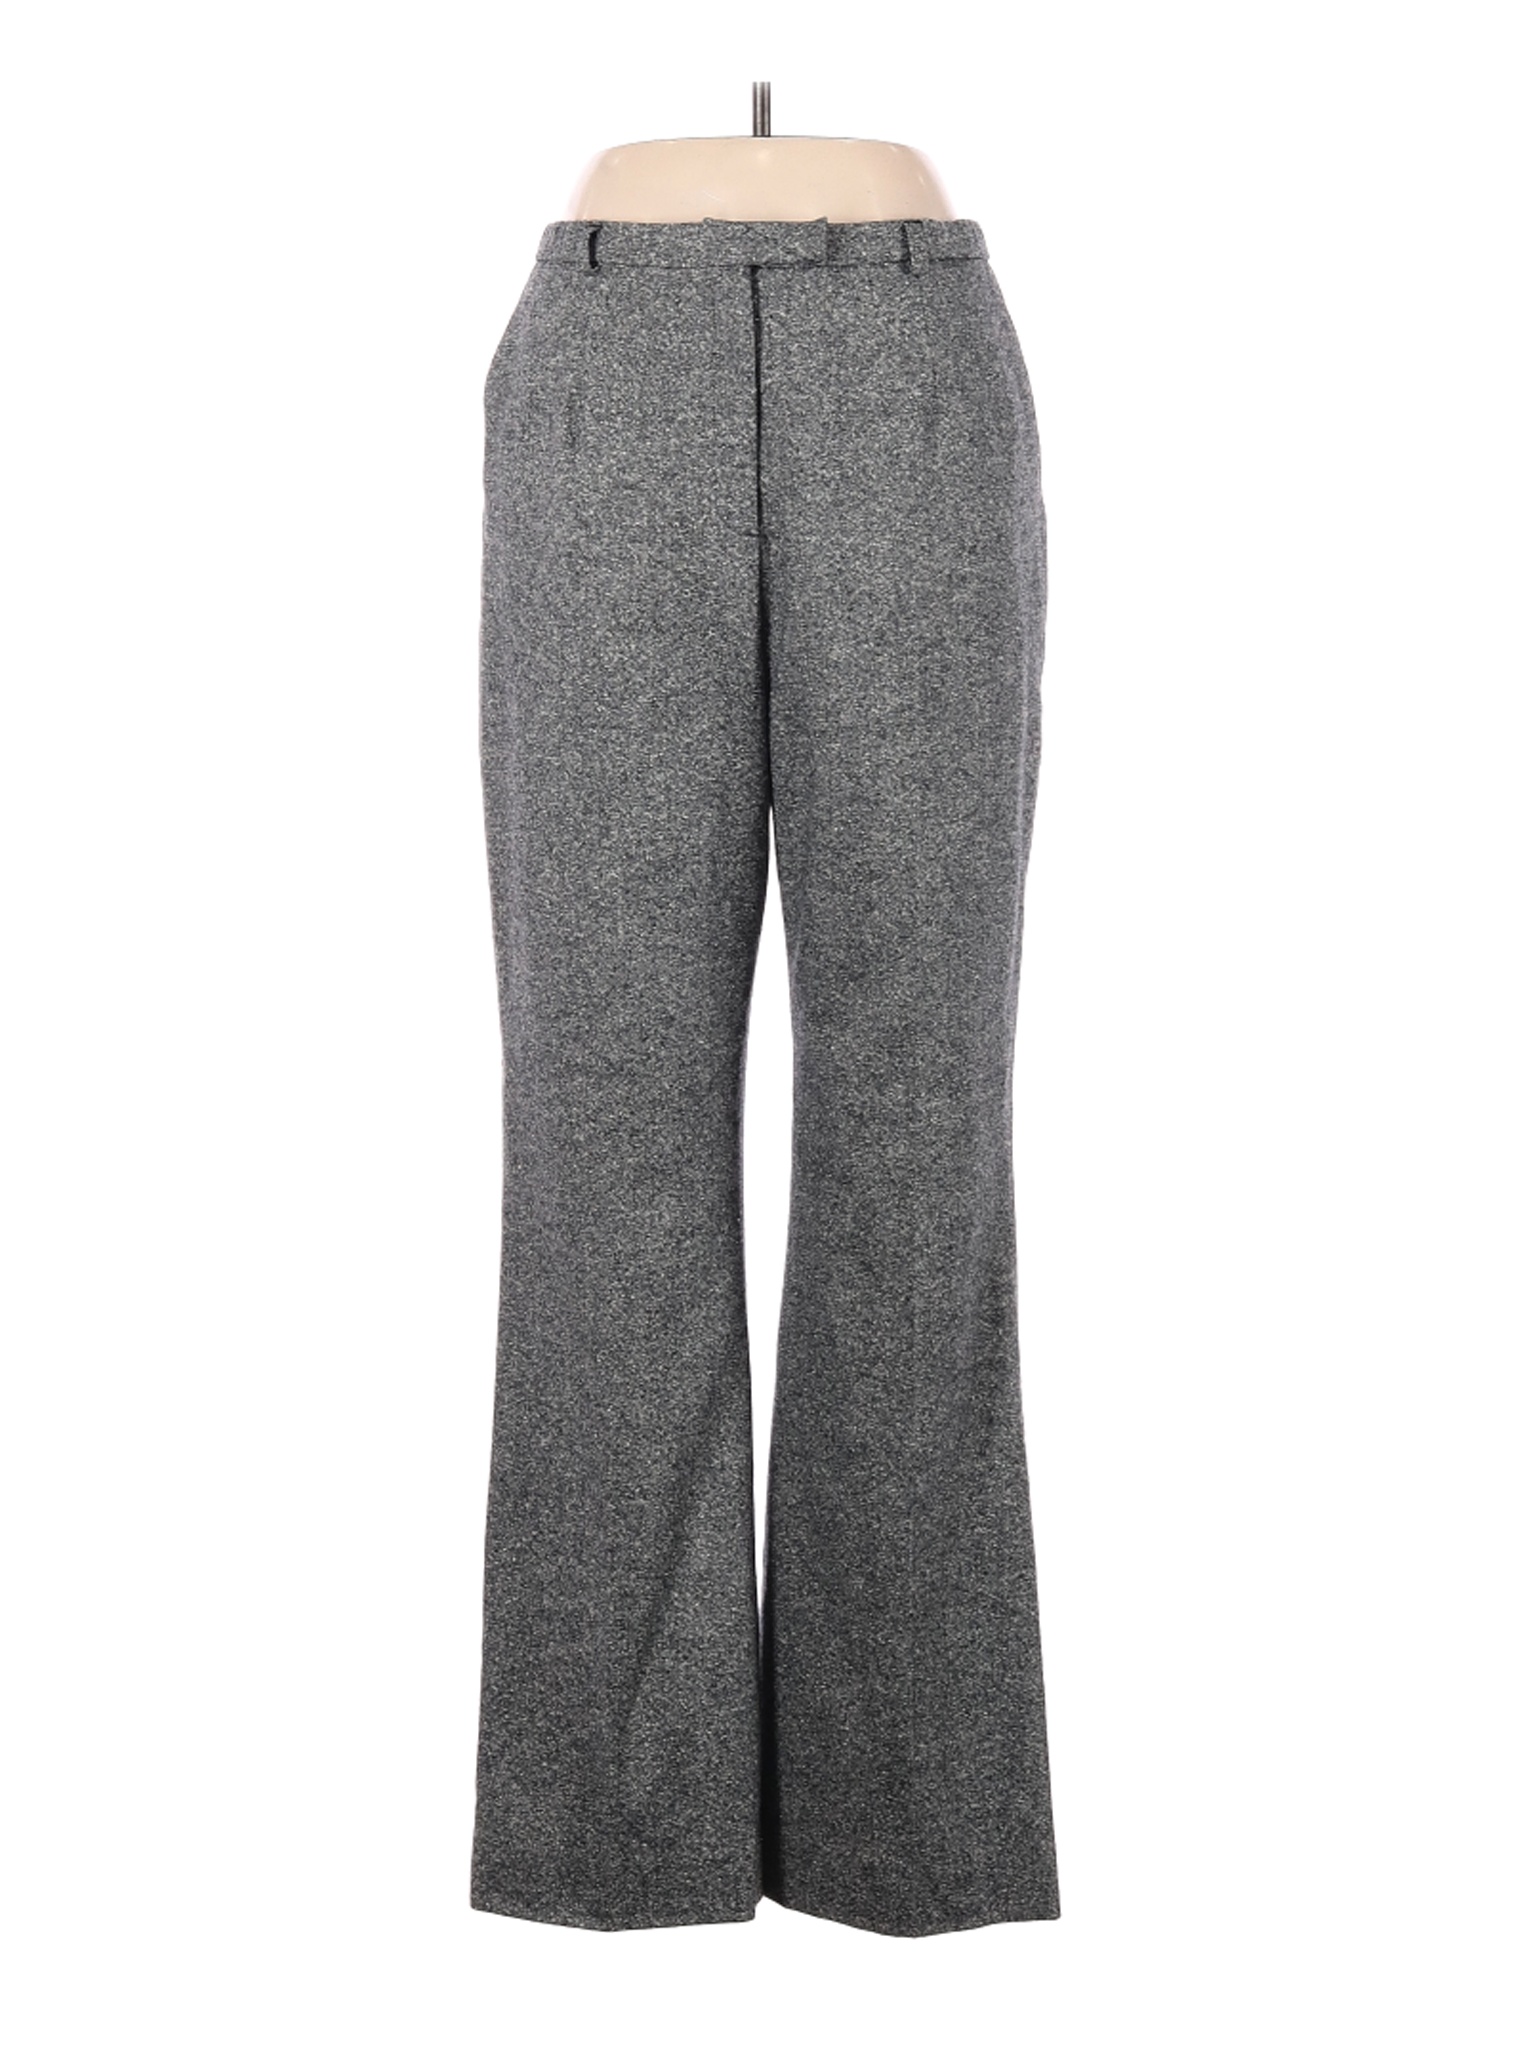 Pendleton Women Gray Dress Pants 10 | eBay